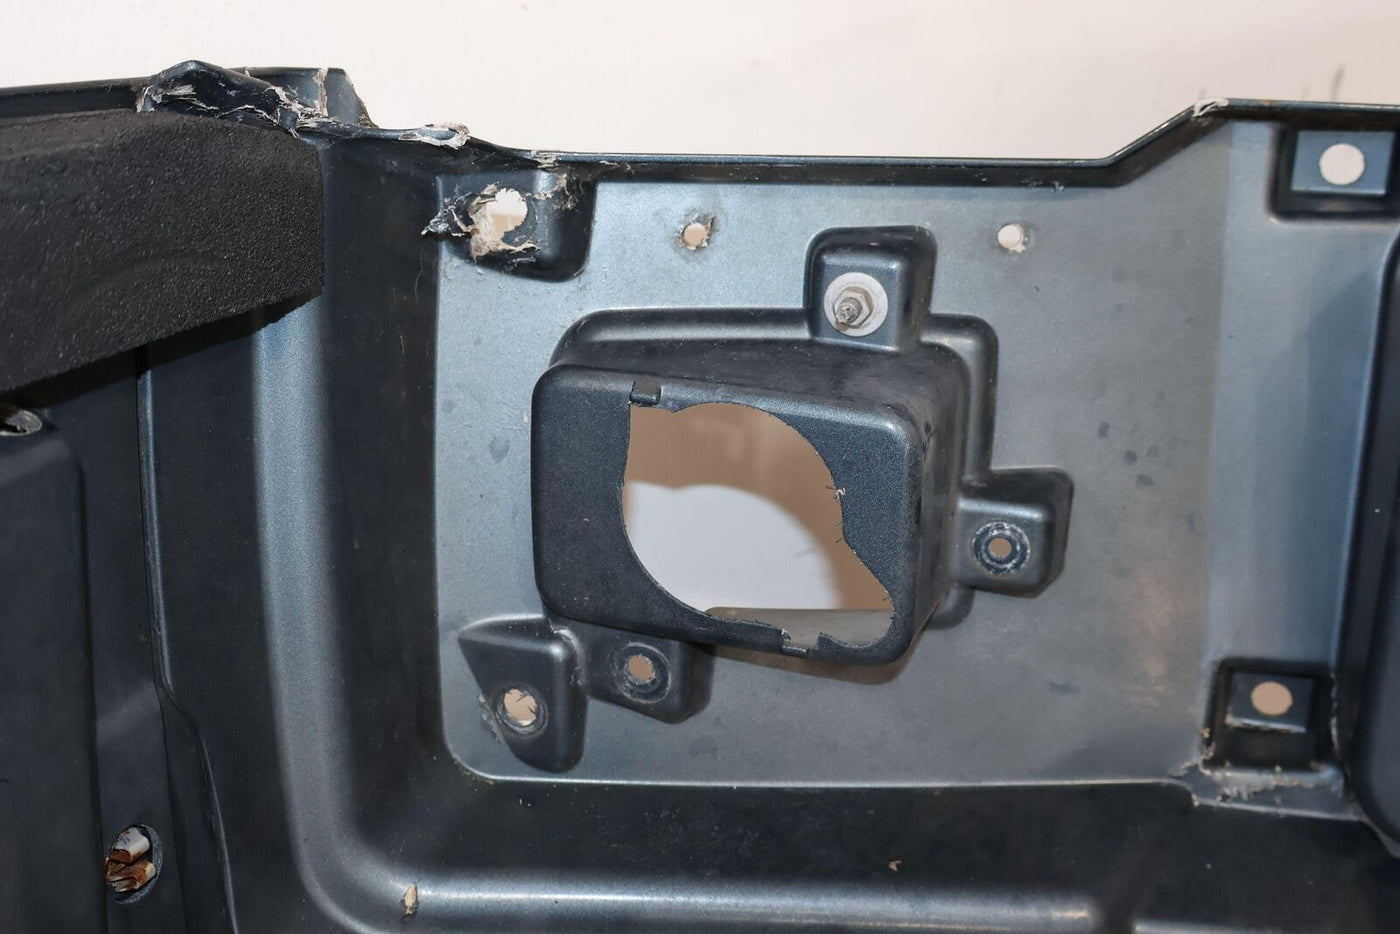 03-07 Hummer H2 OEM Hood W/Upper Chrome Grille (Stealth Gray 46U) RH Side Damage